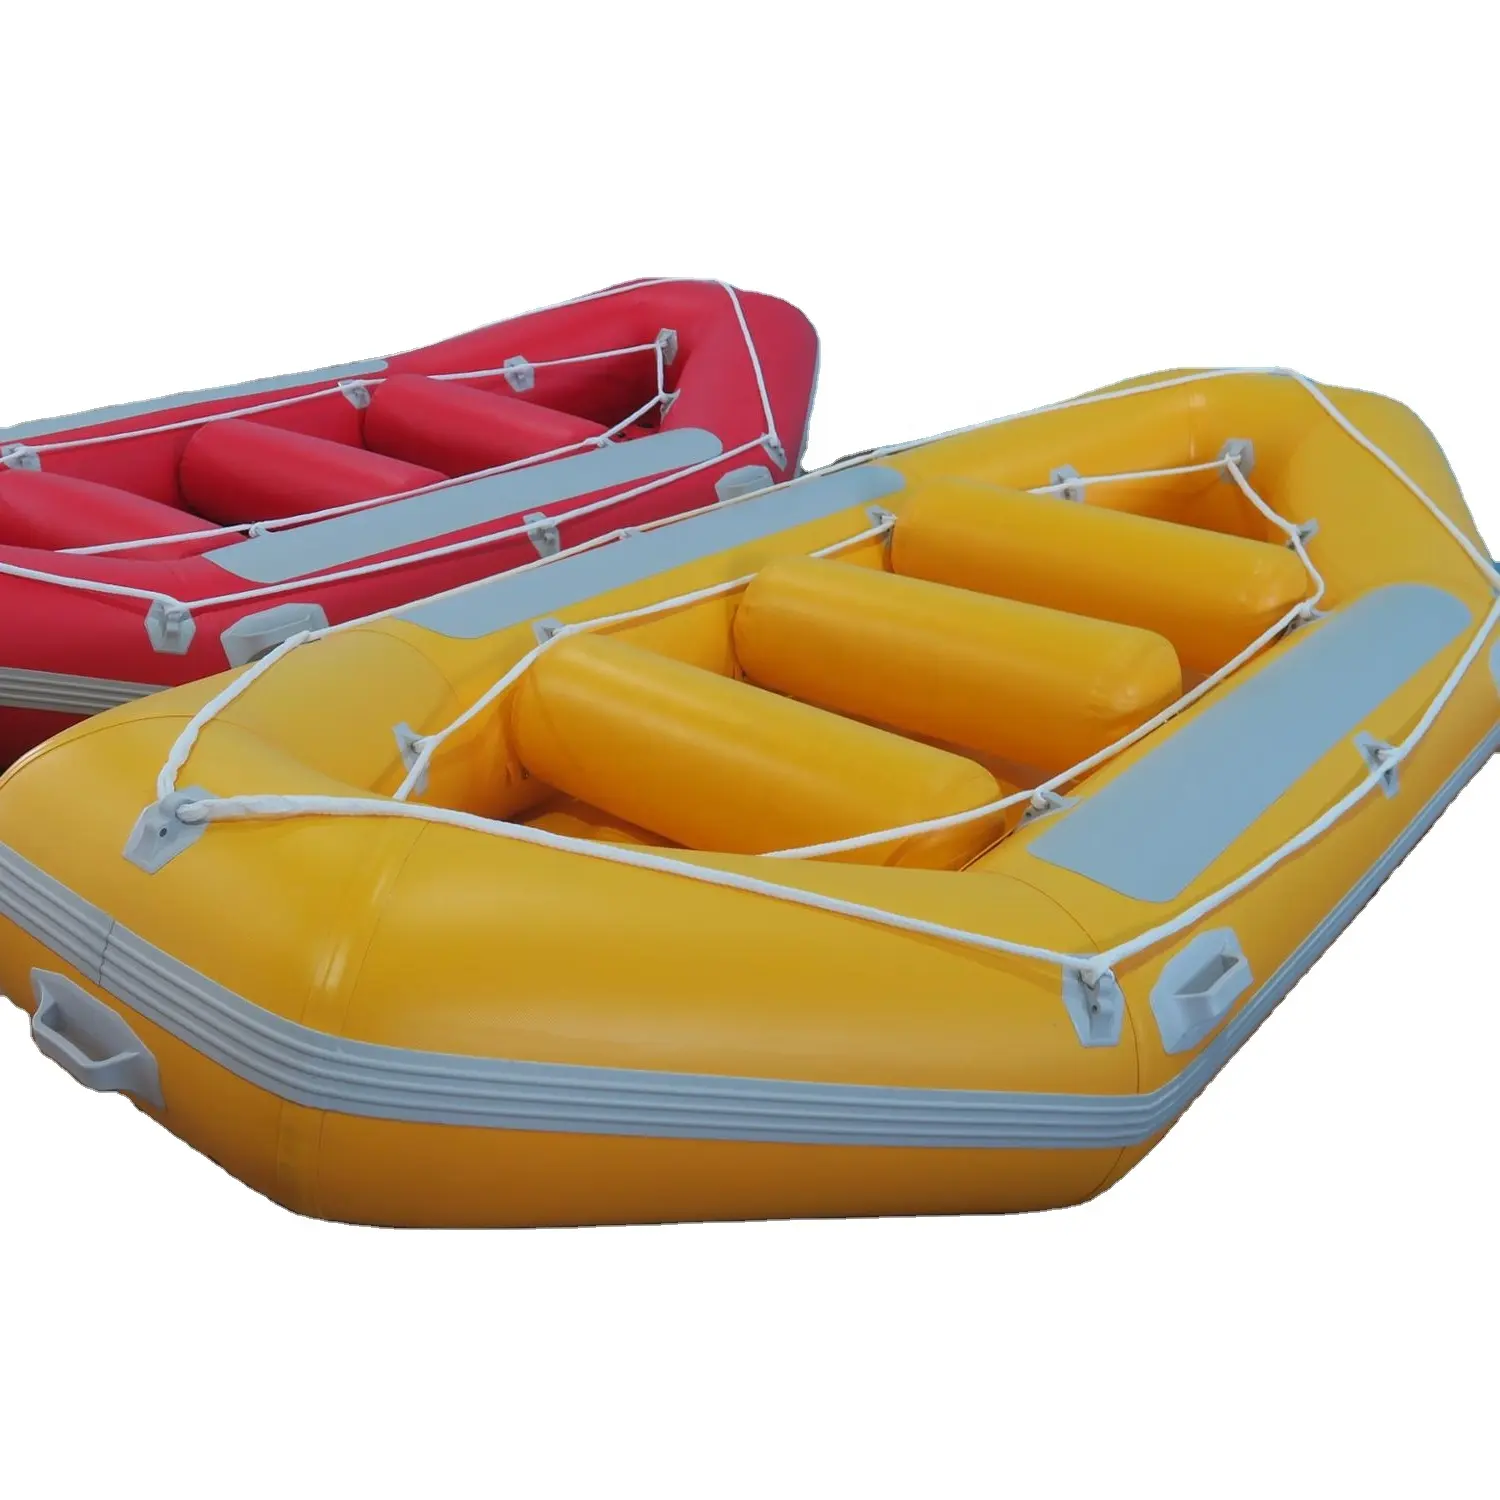 निर्माता राफ्टिंग नौकाओं के लिए सबसे लोकप्रिय बेचने inflatable राफ्टिंग नाव मछली पकड़ने सर्फिंग